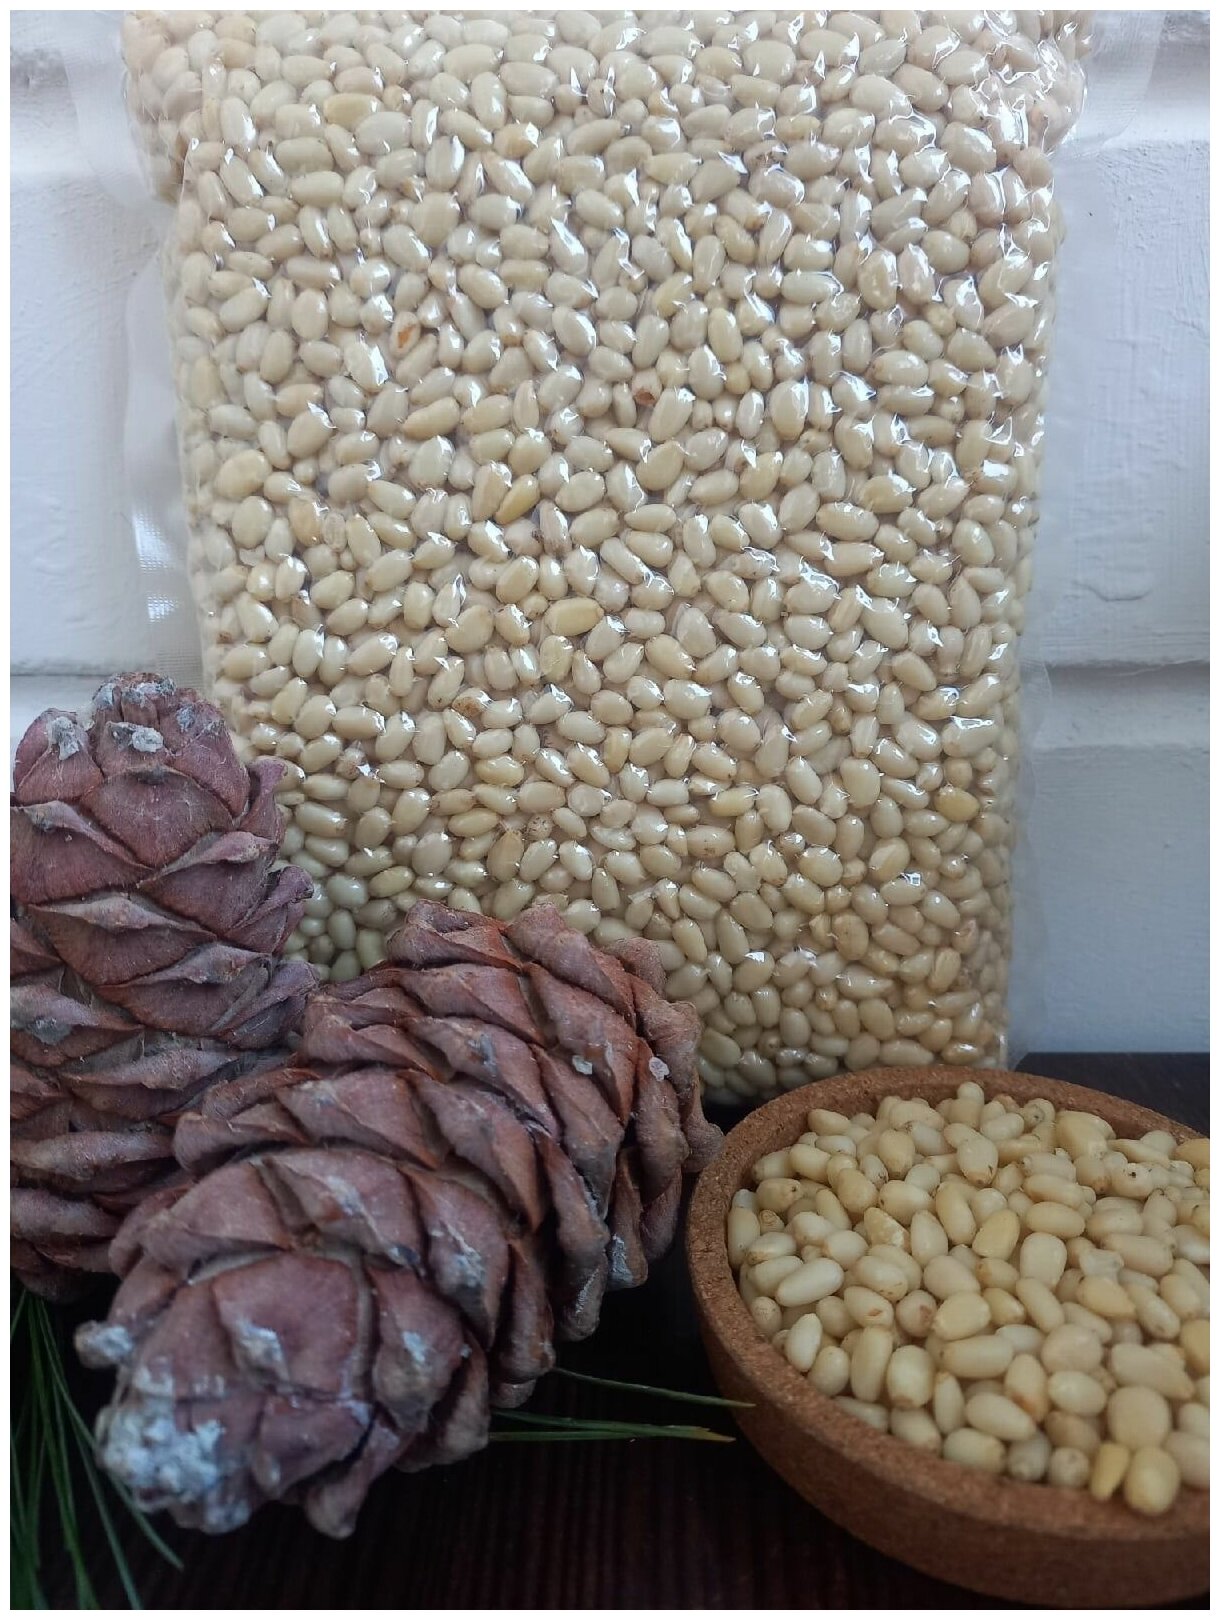 Кедровые орехи очищенные 100 грамм.